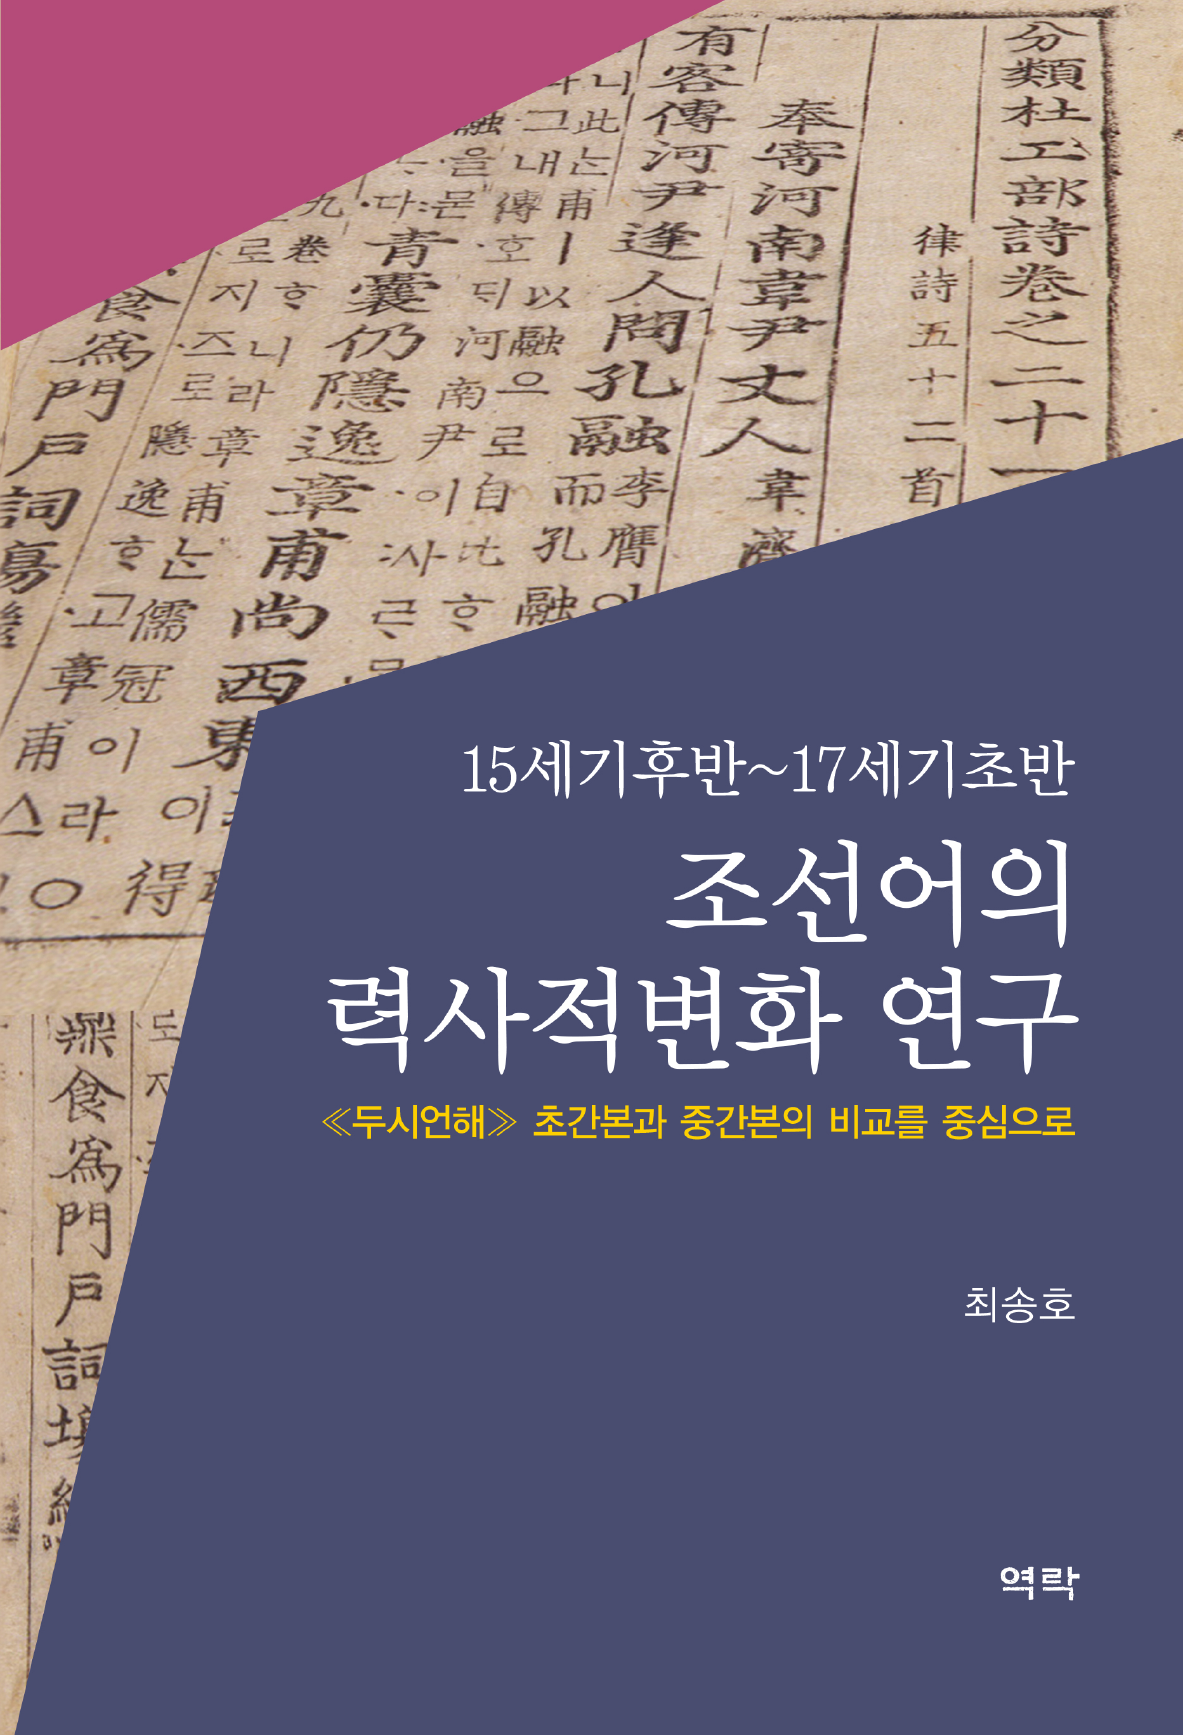 조선어의 력사적변화 연구(15세기후반-17세기초반)